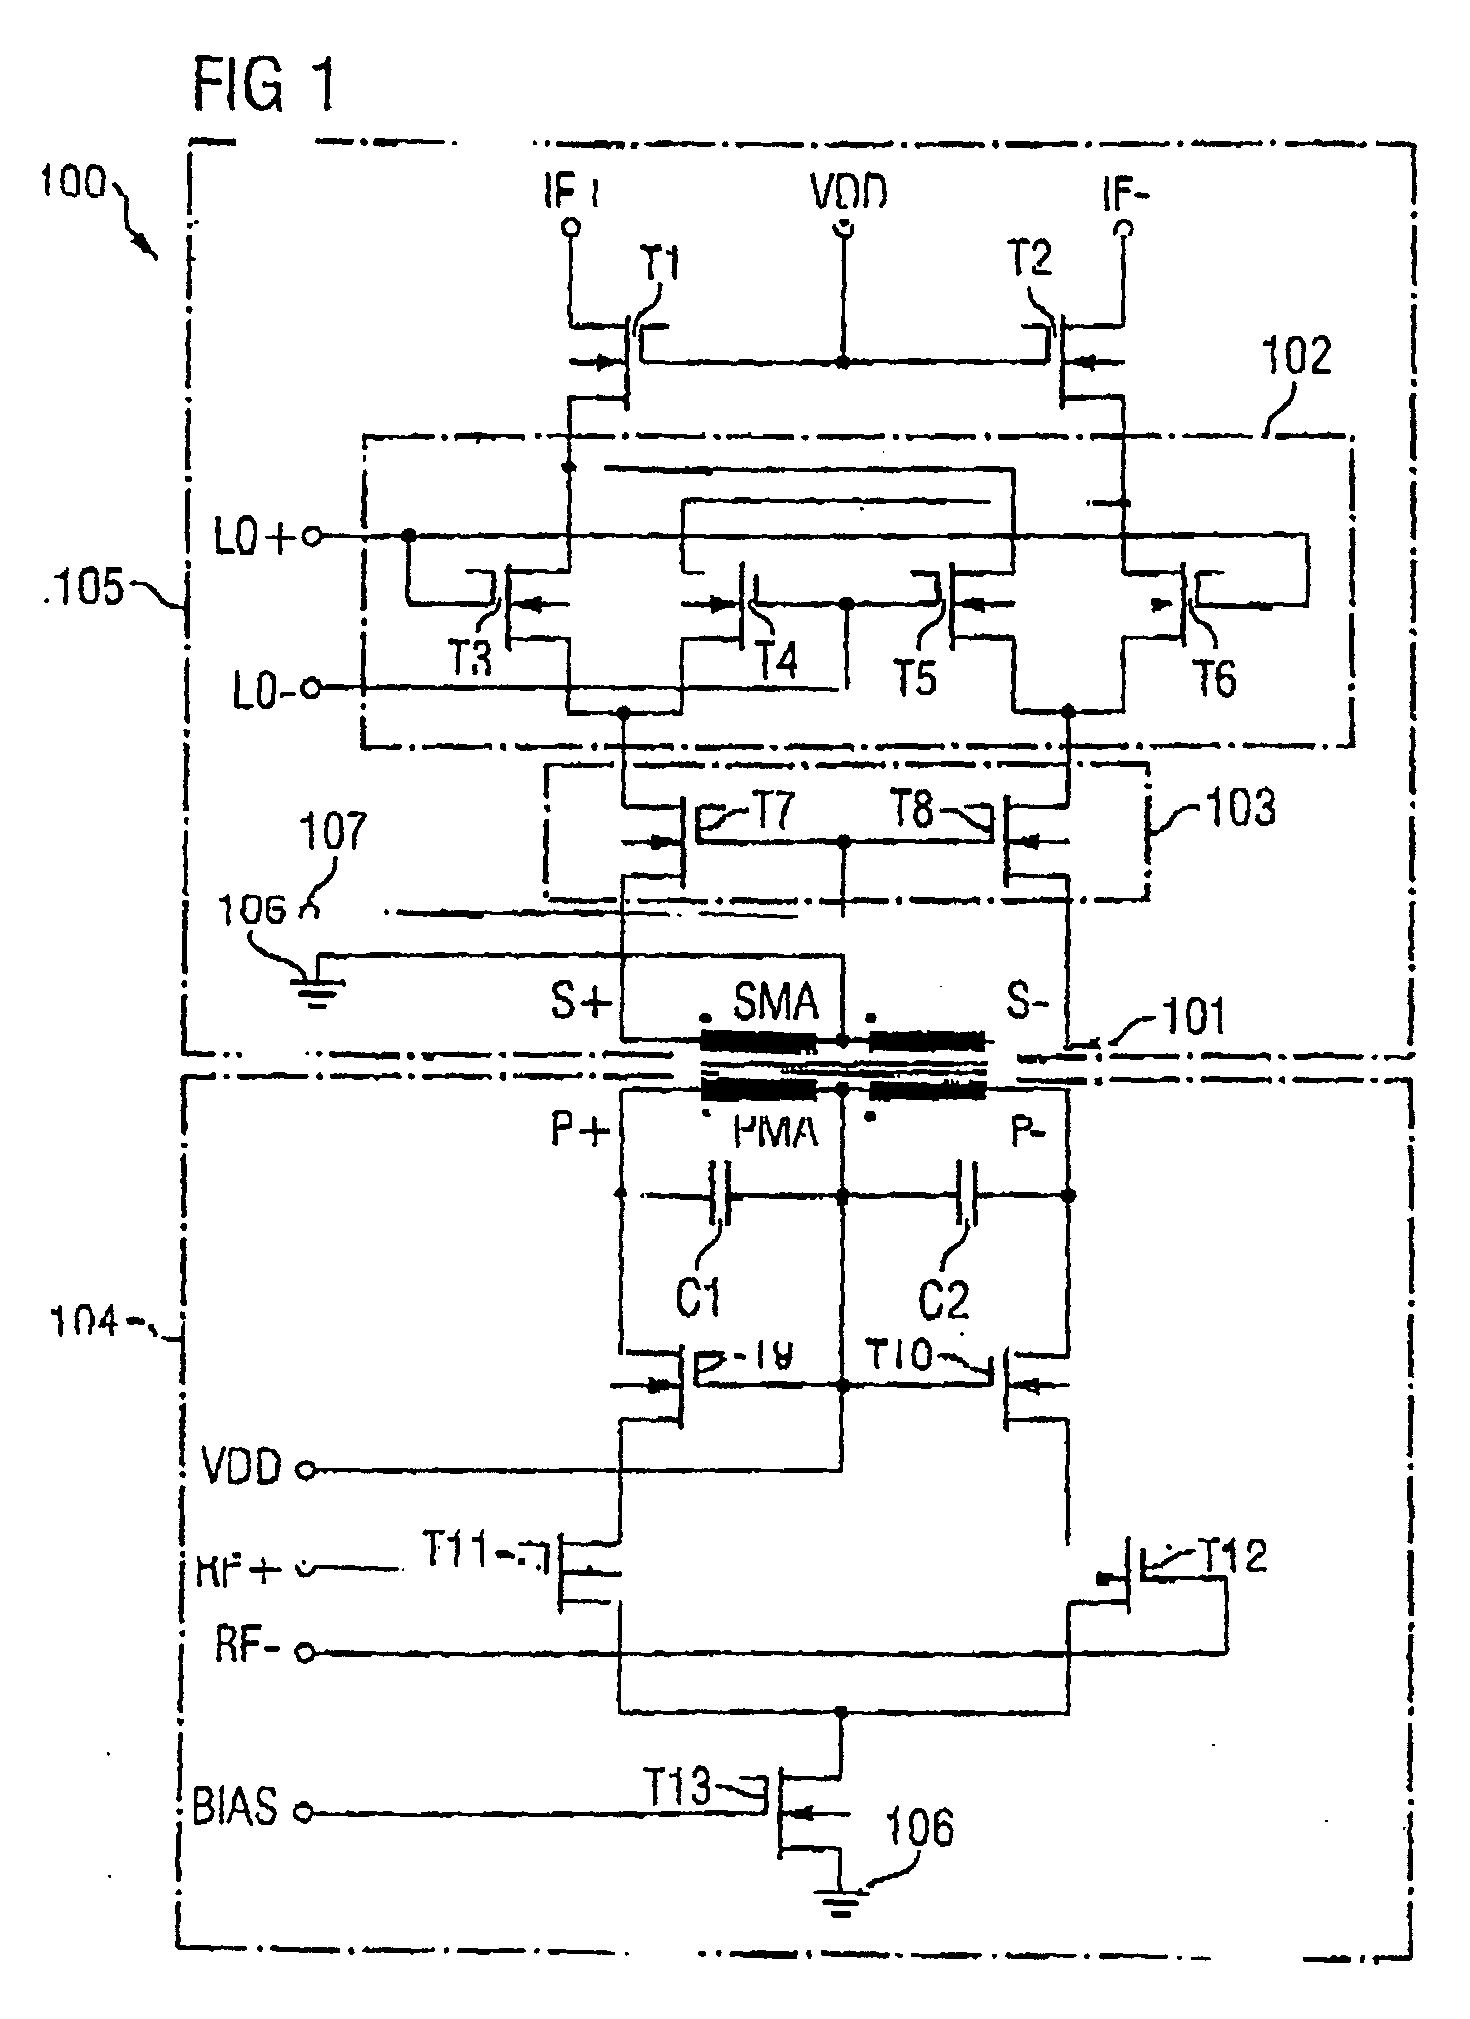 Integrated circuit having a mixer circuit